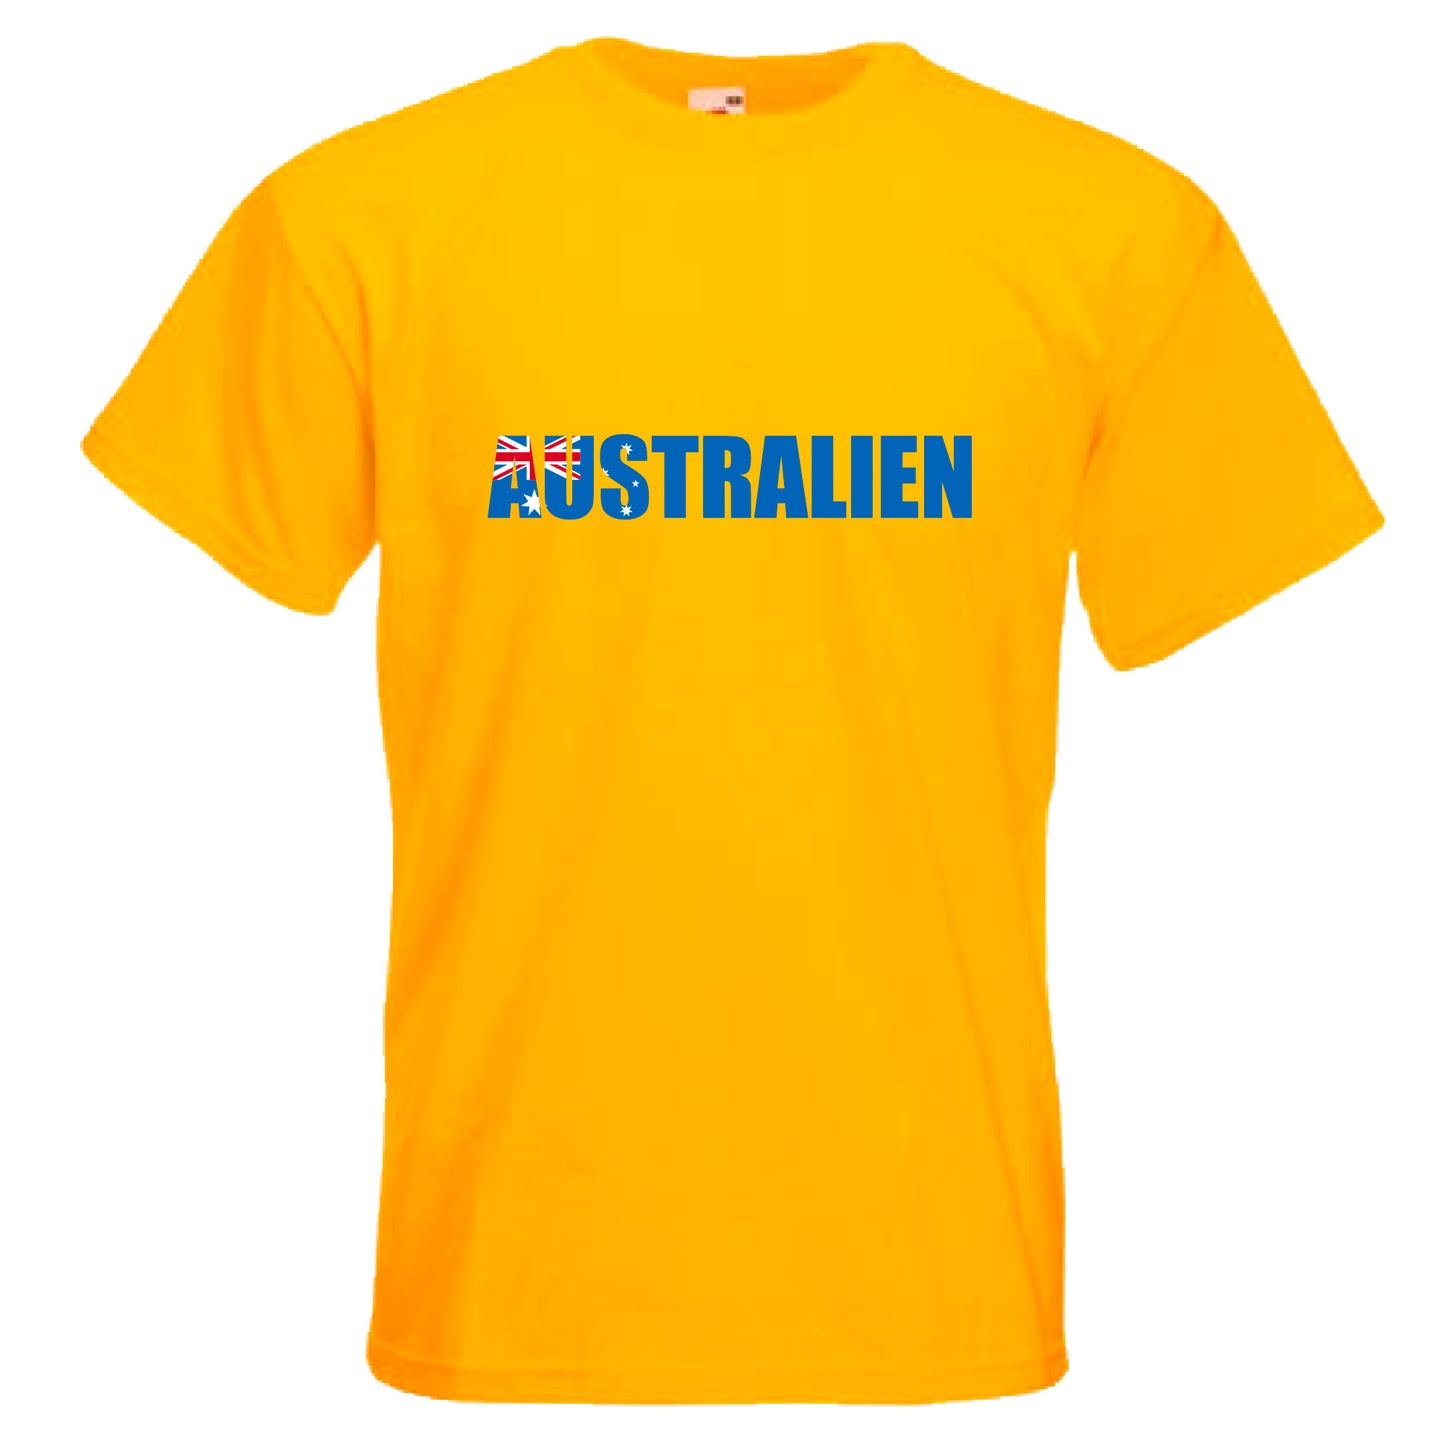 INDIGOS UG - T-Shirt Herren - Australien - Schriftzug - Fussball